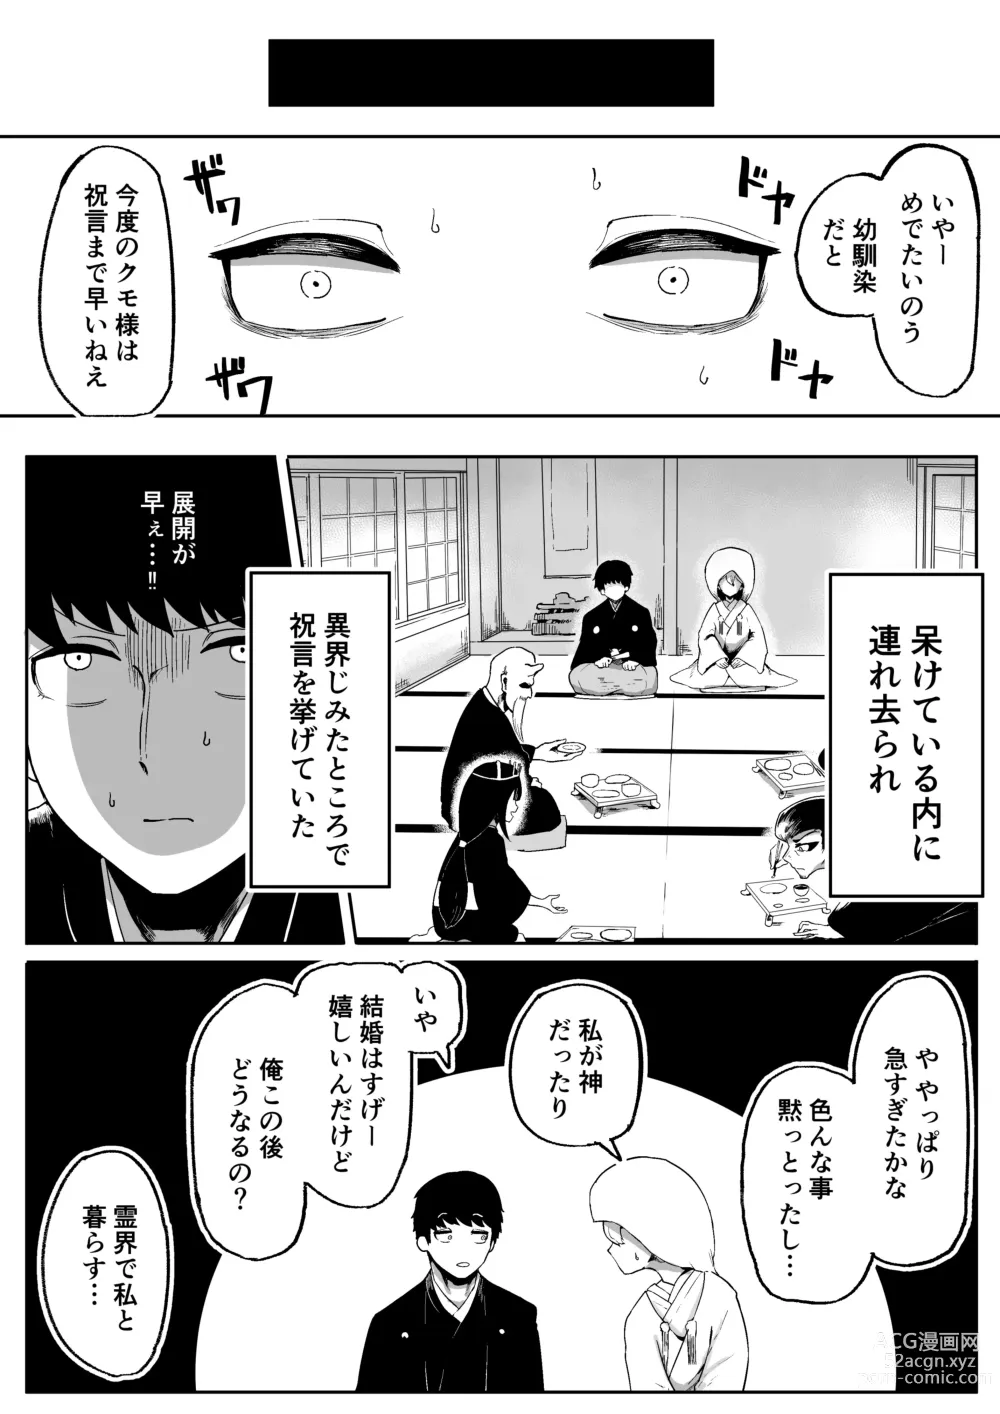 Page 19 of doujinshi Kamisama to Kodomo ga Dekiru made